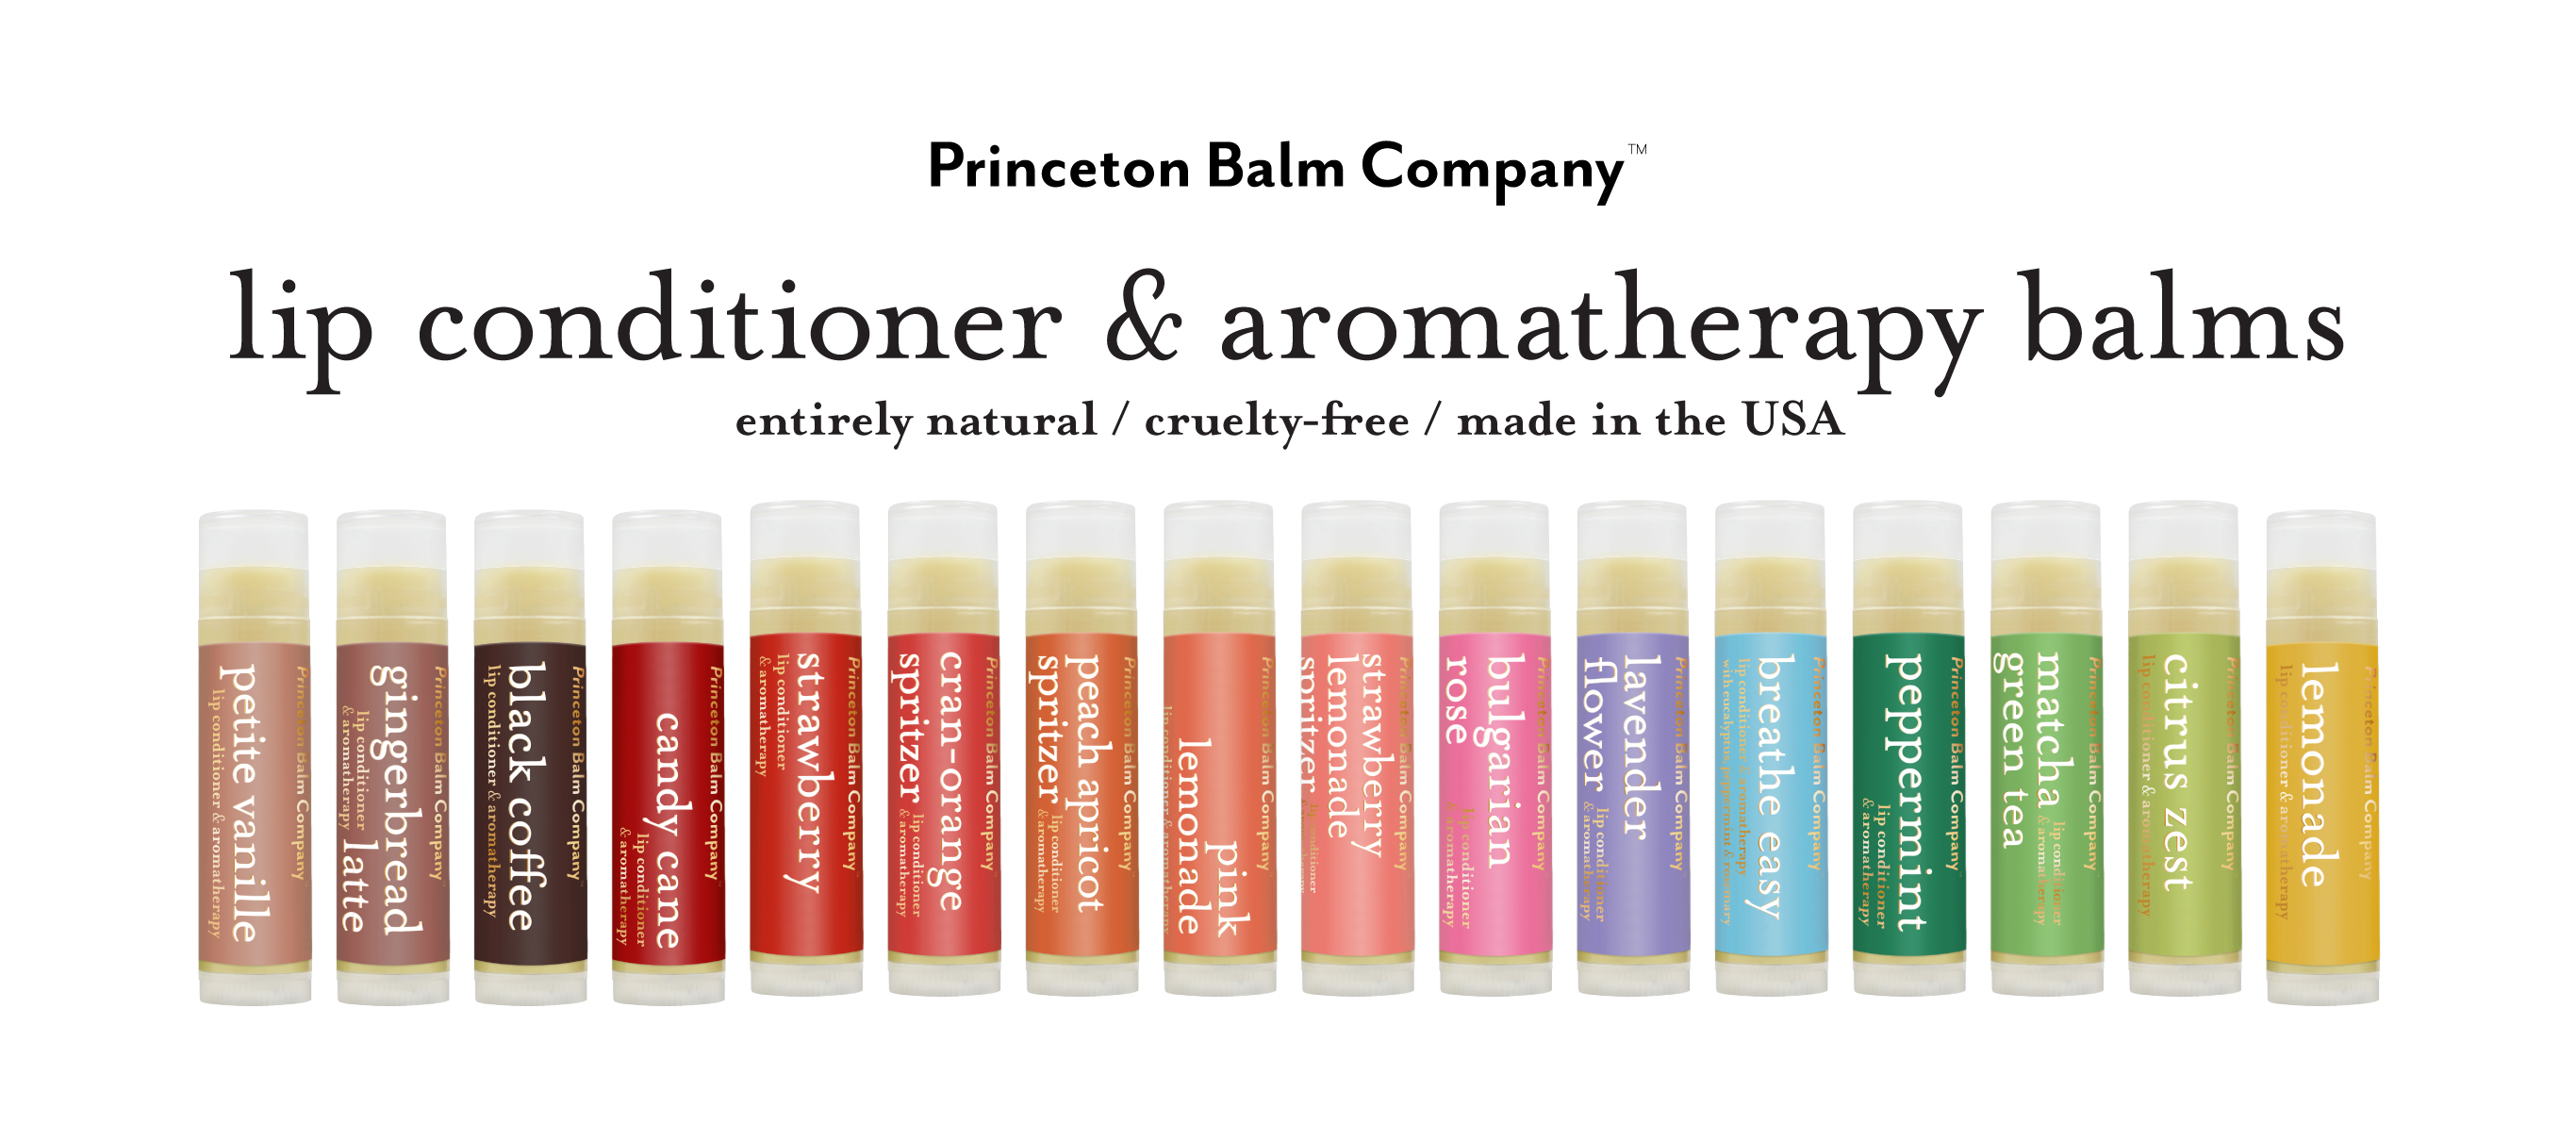 Princeton Balm Company